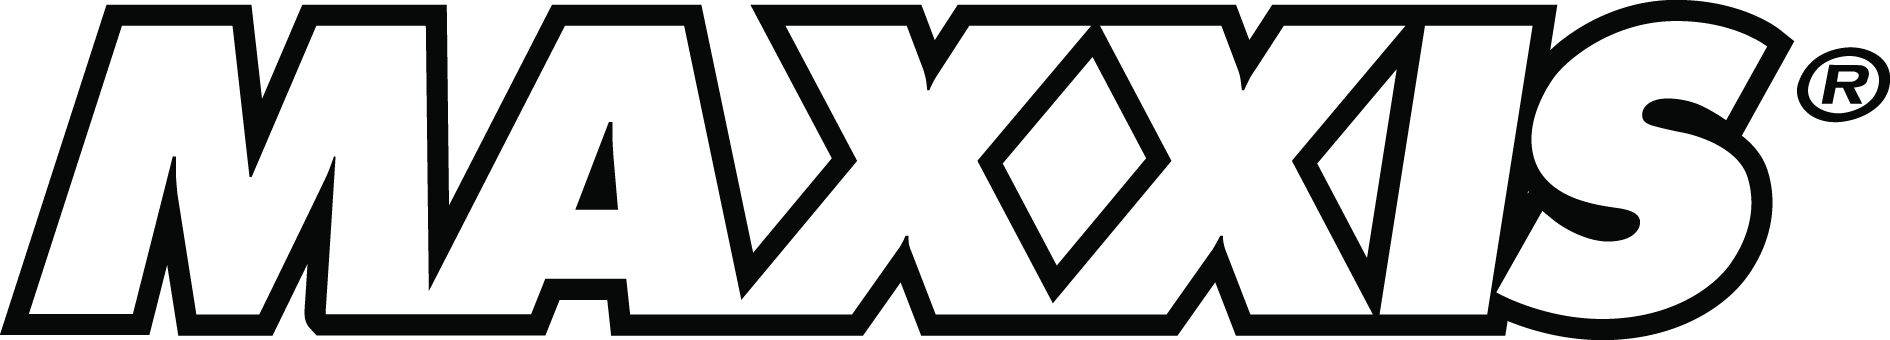 logo-maxxis